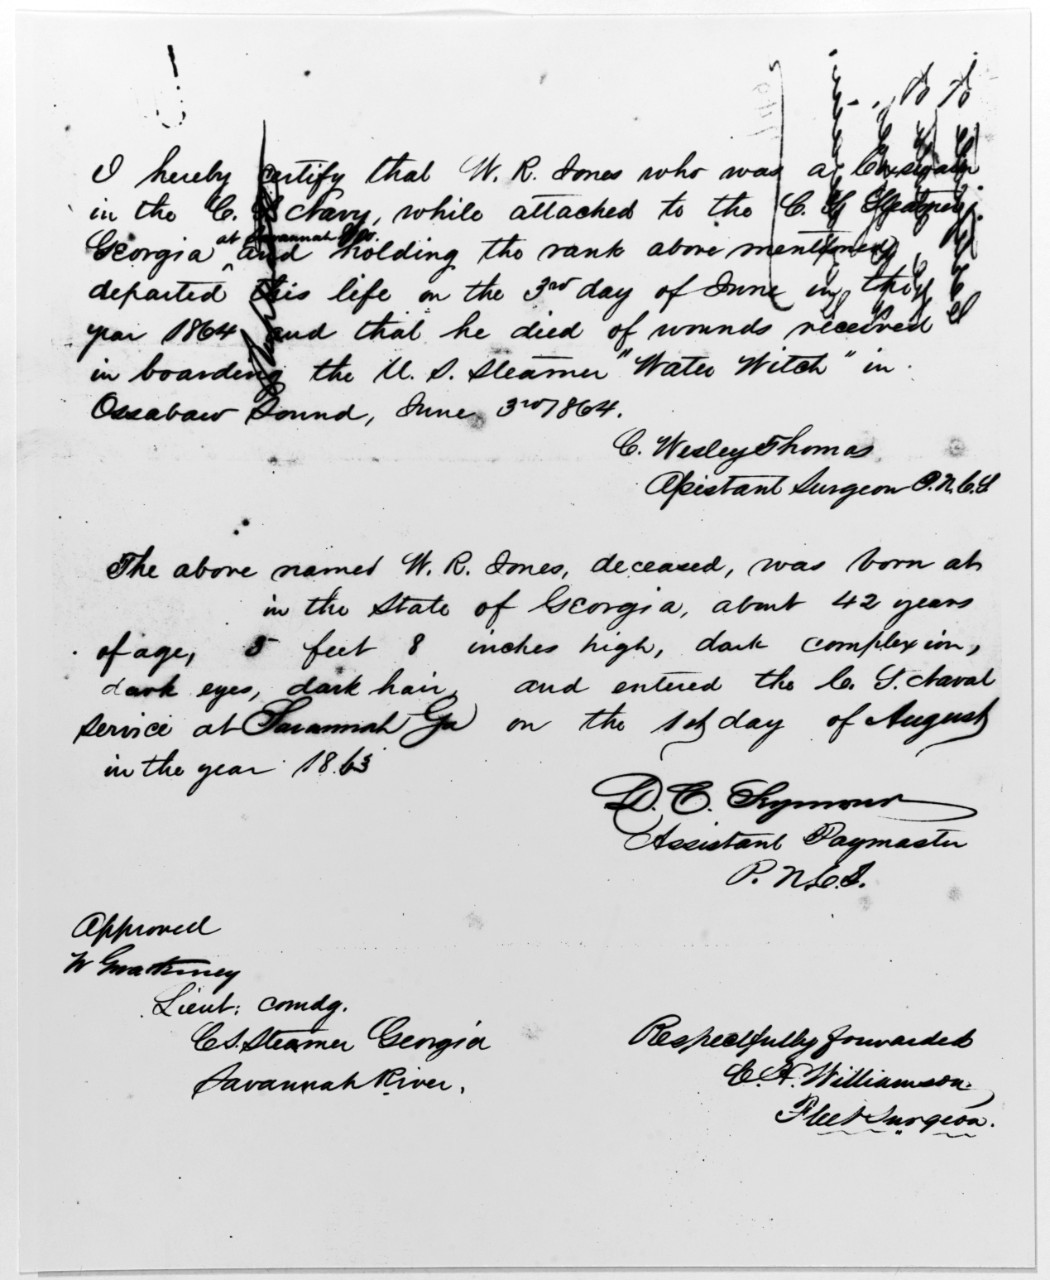 Death certificate of Coxswain W.R. Jones, C.S. Navy.